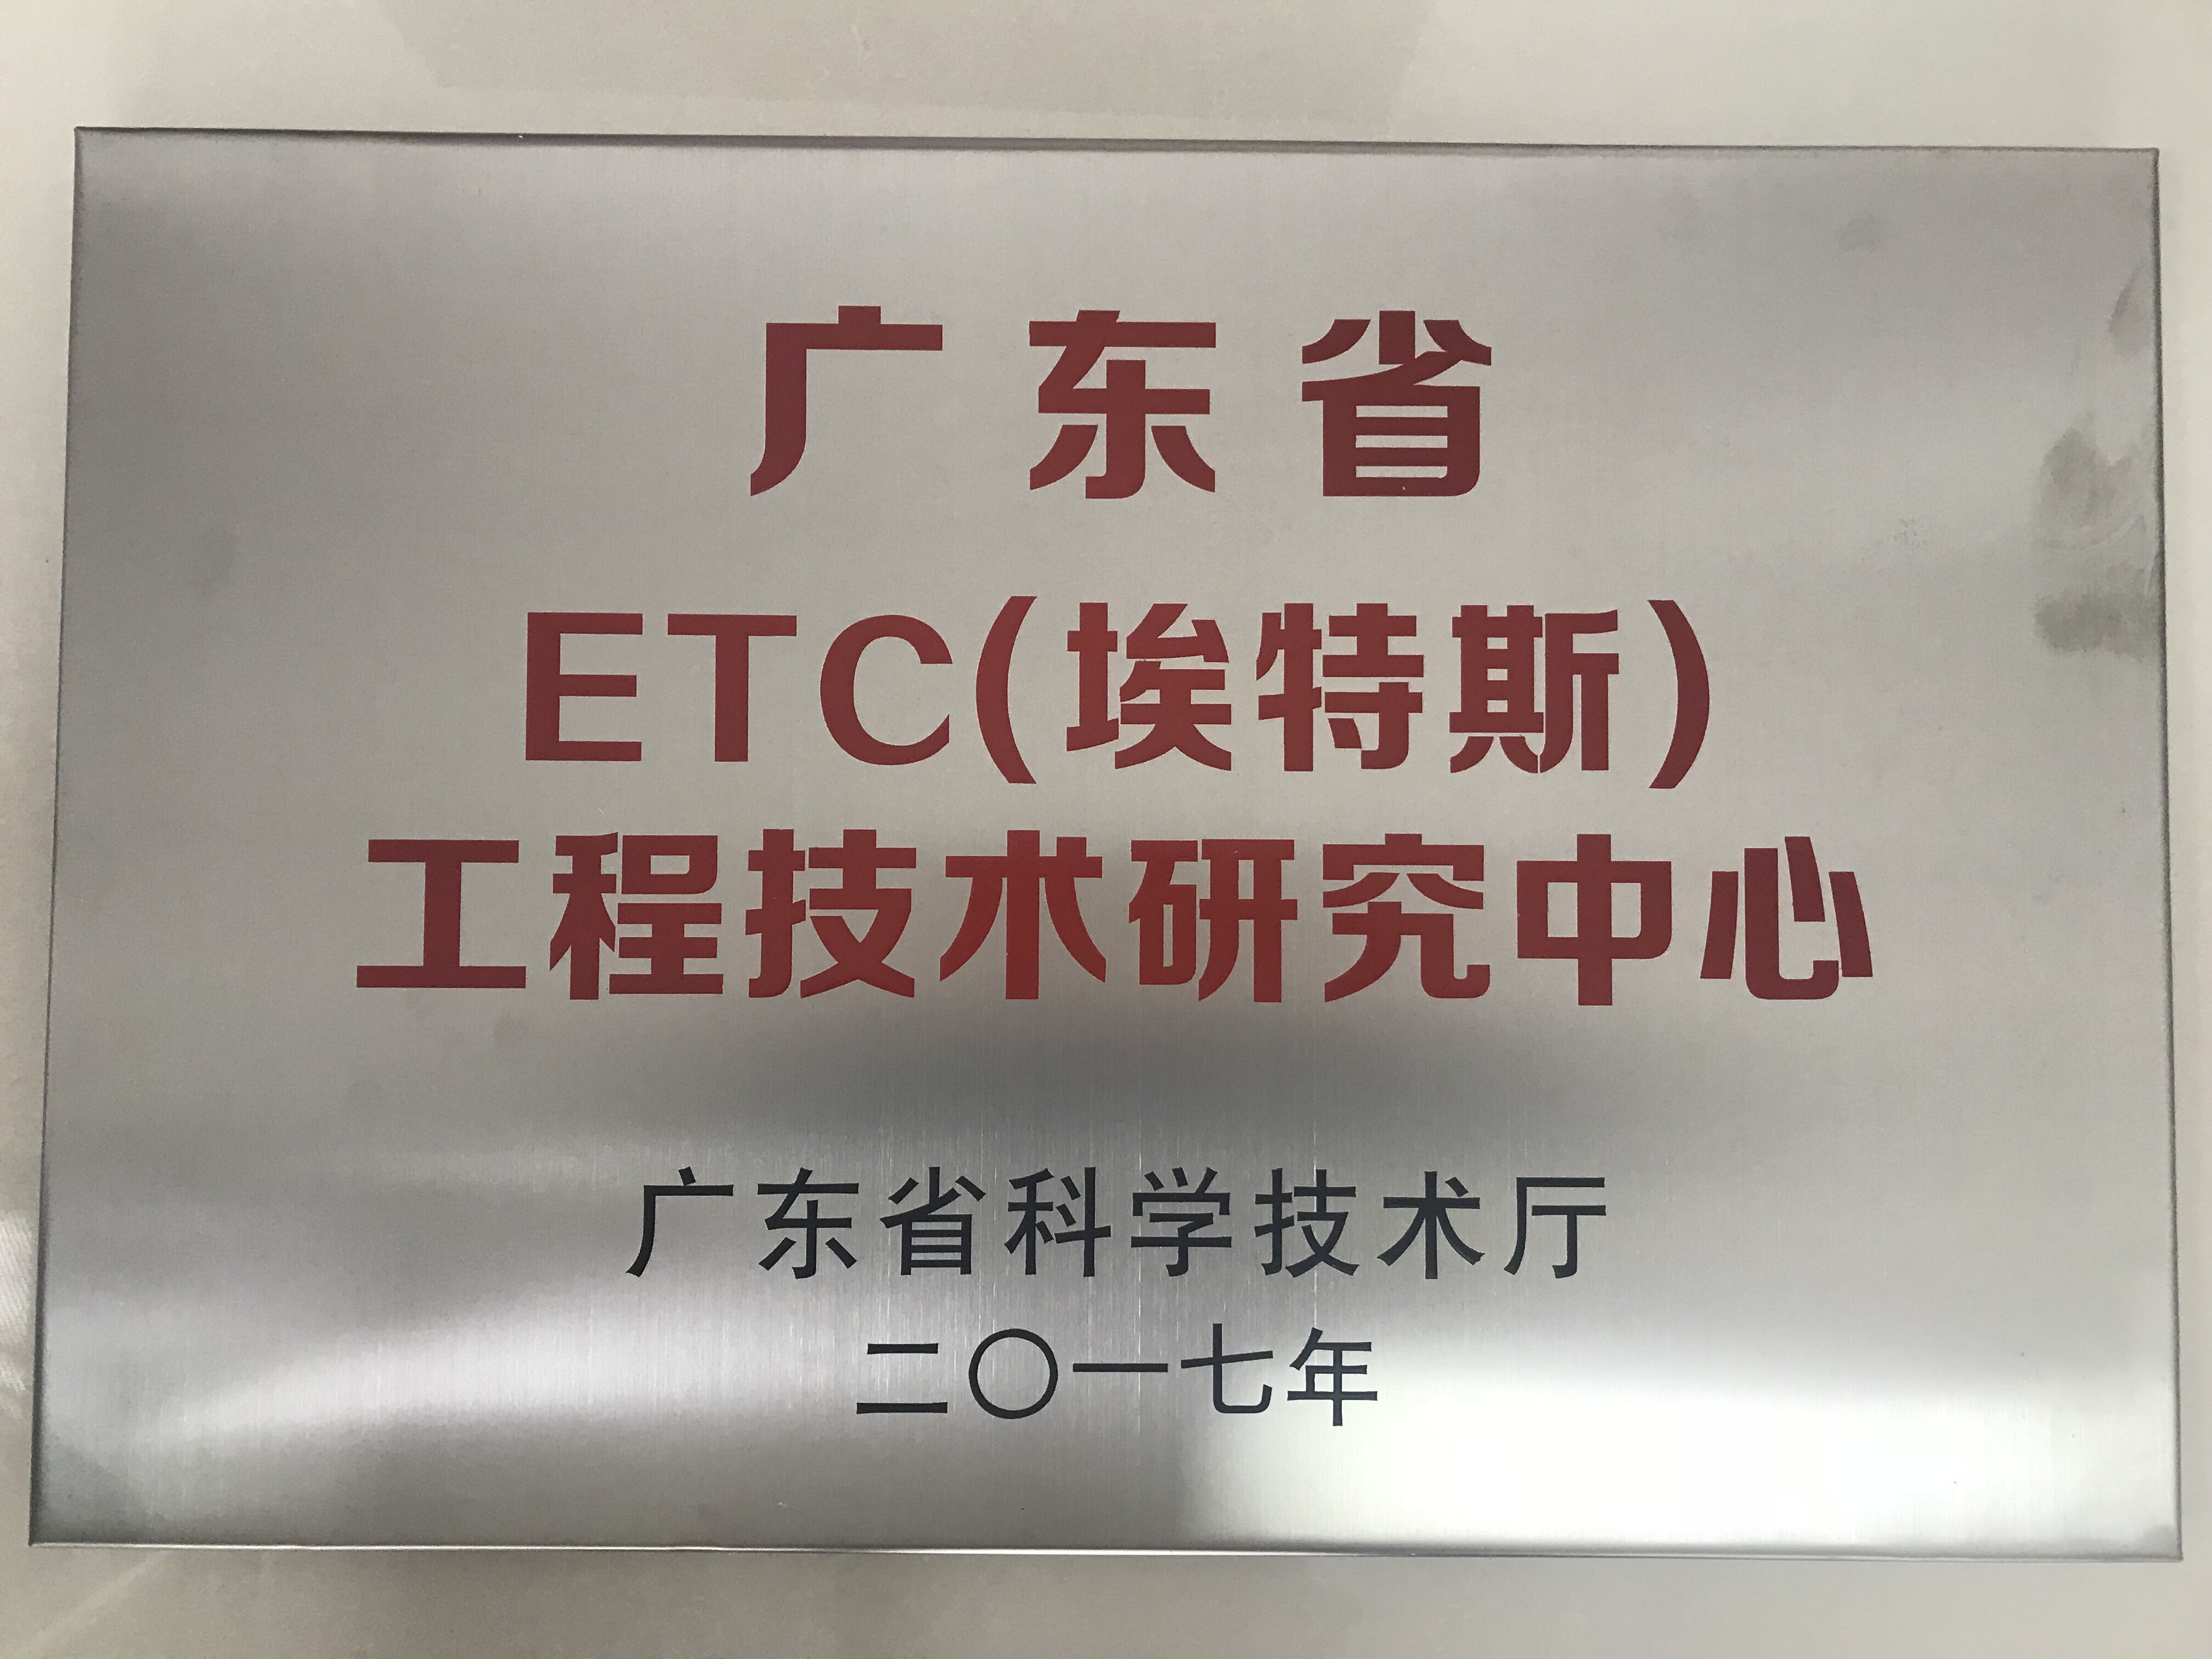 广东省ETC（yh533388银河）工程技术研究中心.jpg